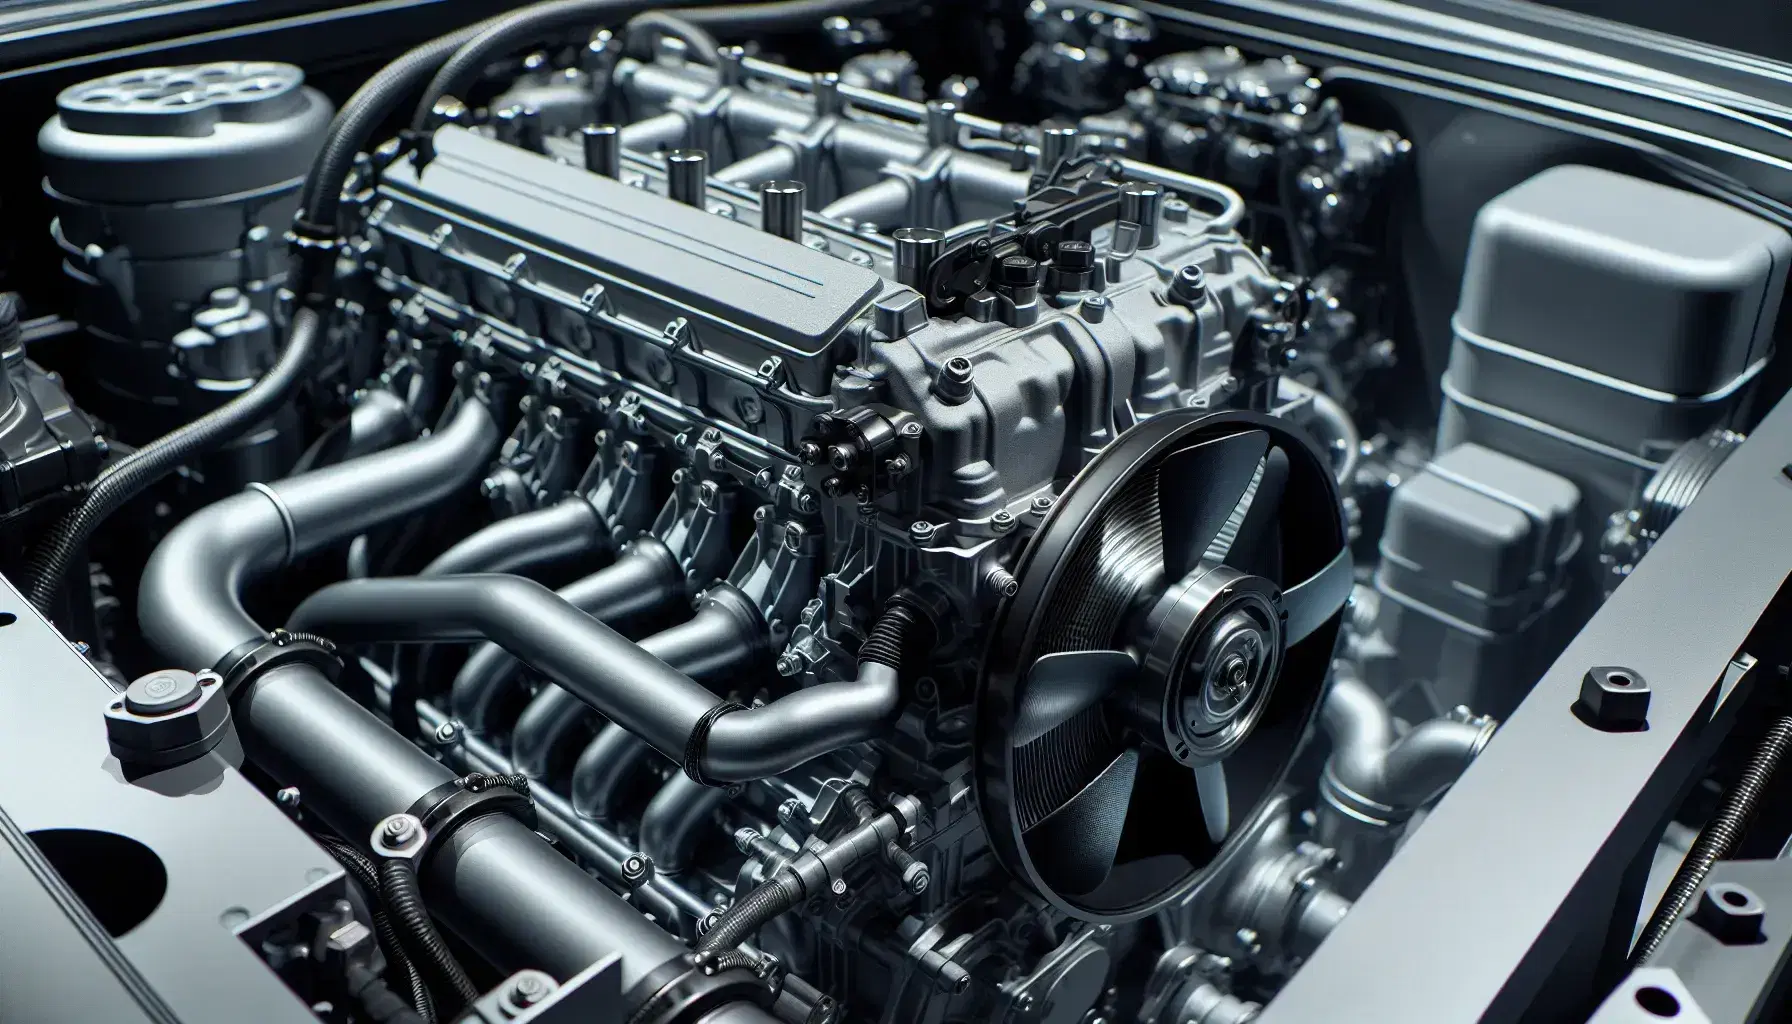 Motor de combustión interna de vehículo con bloque motor gris, tuberías negras del sistema de refrigeración, radiador plateado y aspa de ventilador.